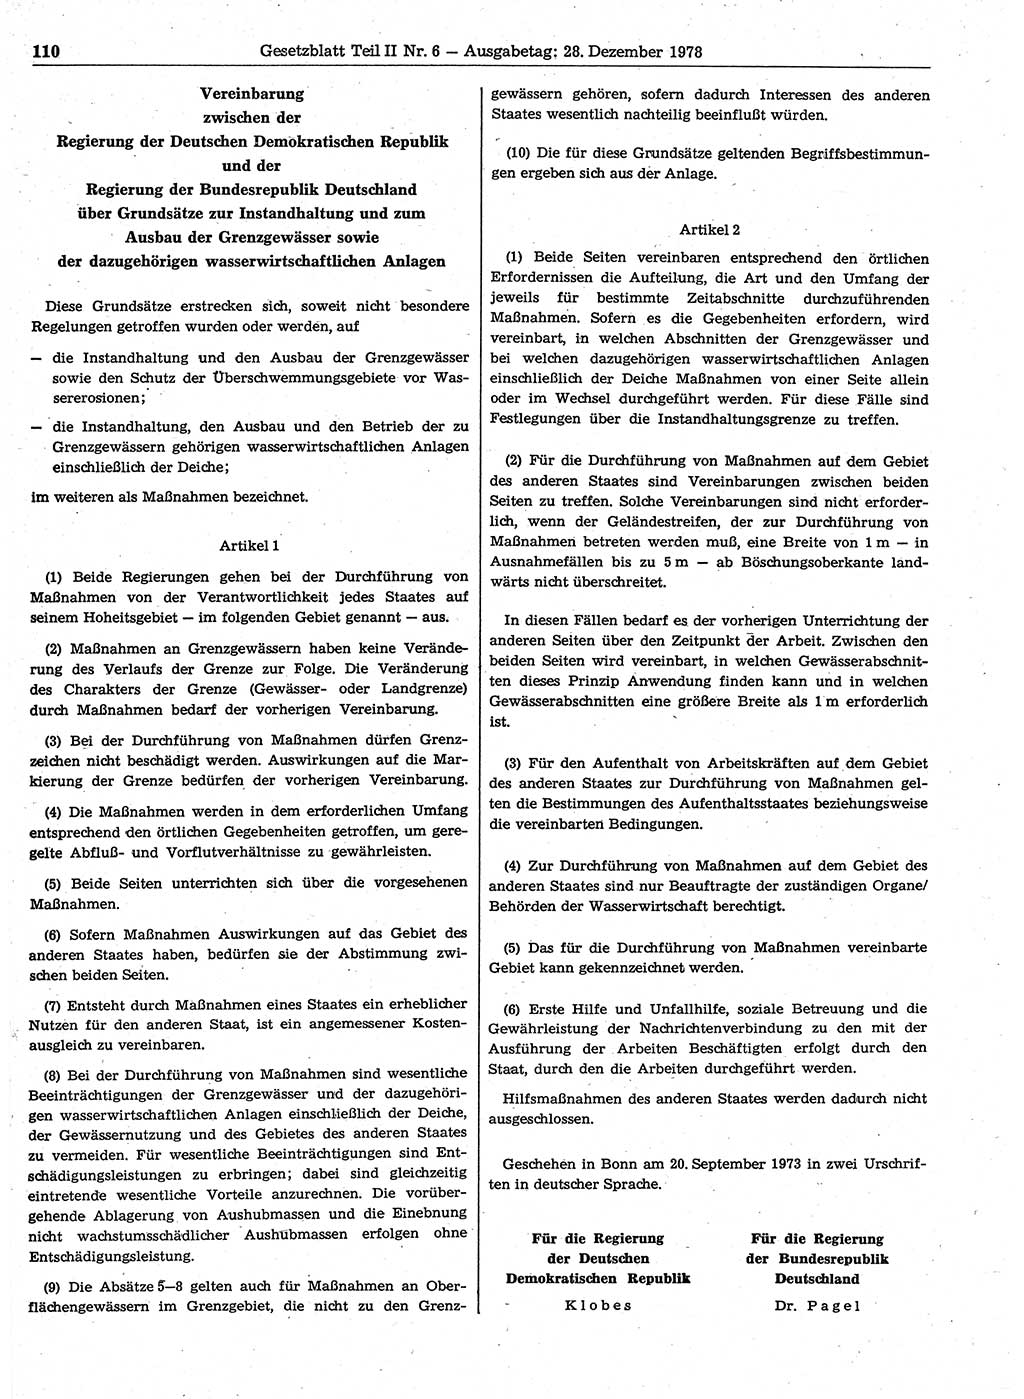 Gesetzblatt (GBl.) der Deutschen Demokratischen Republik (DDR) Teil ⅠⅠ 1978, Seite 110 (GBl. DDR ⅠⅠ 1978, S. 110)